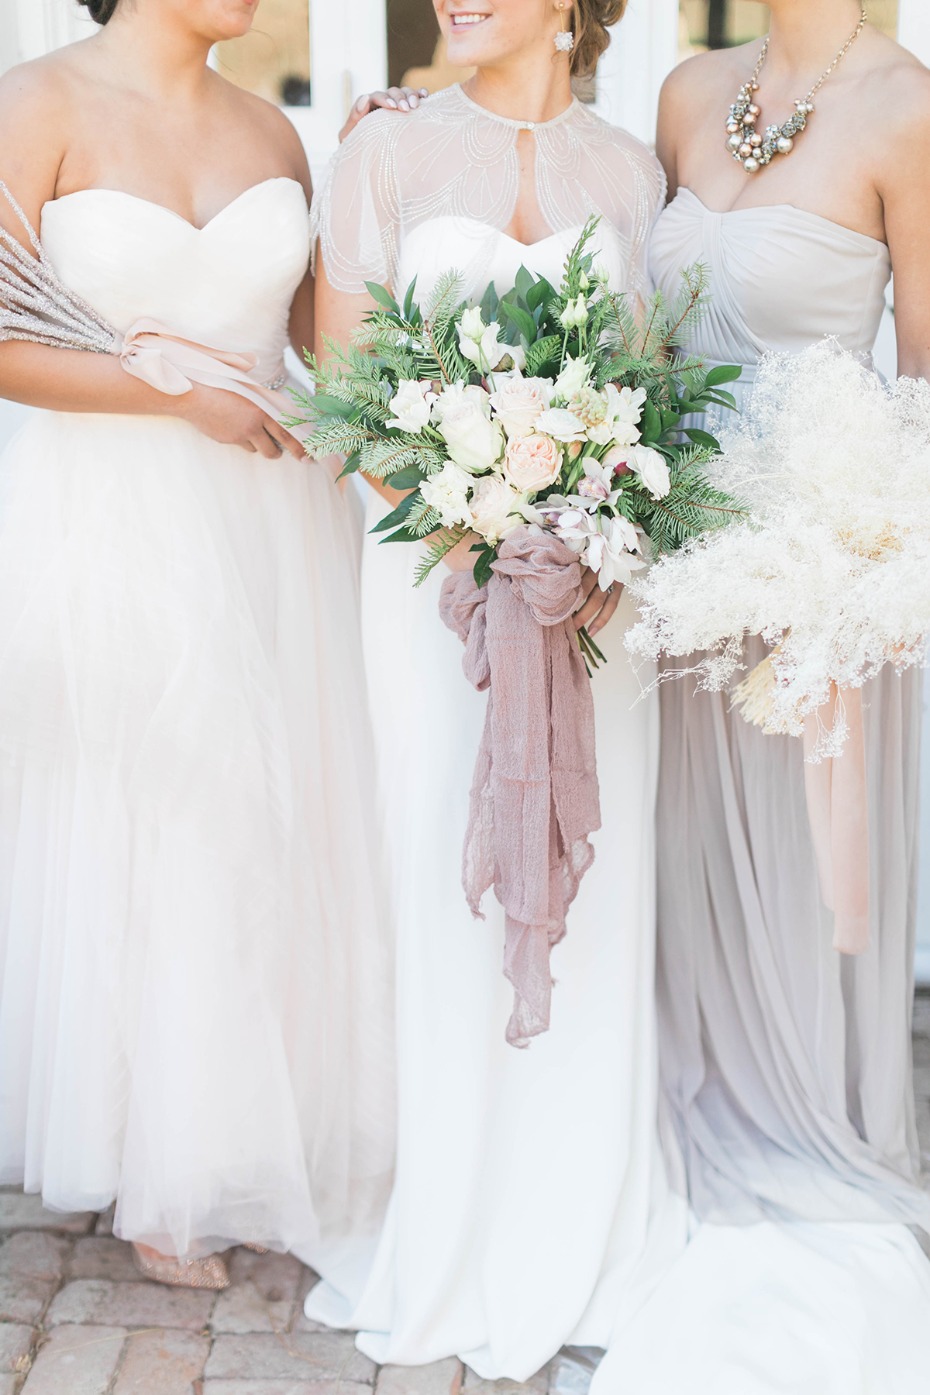 Elegant Blush and White Winter To Spring Wedding Ideas